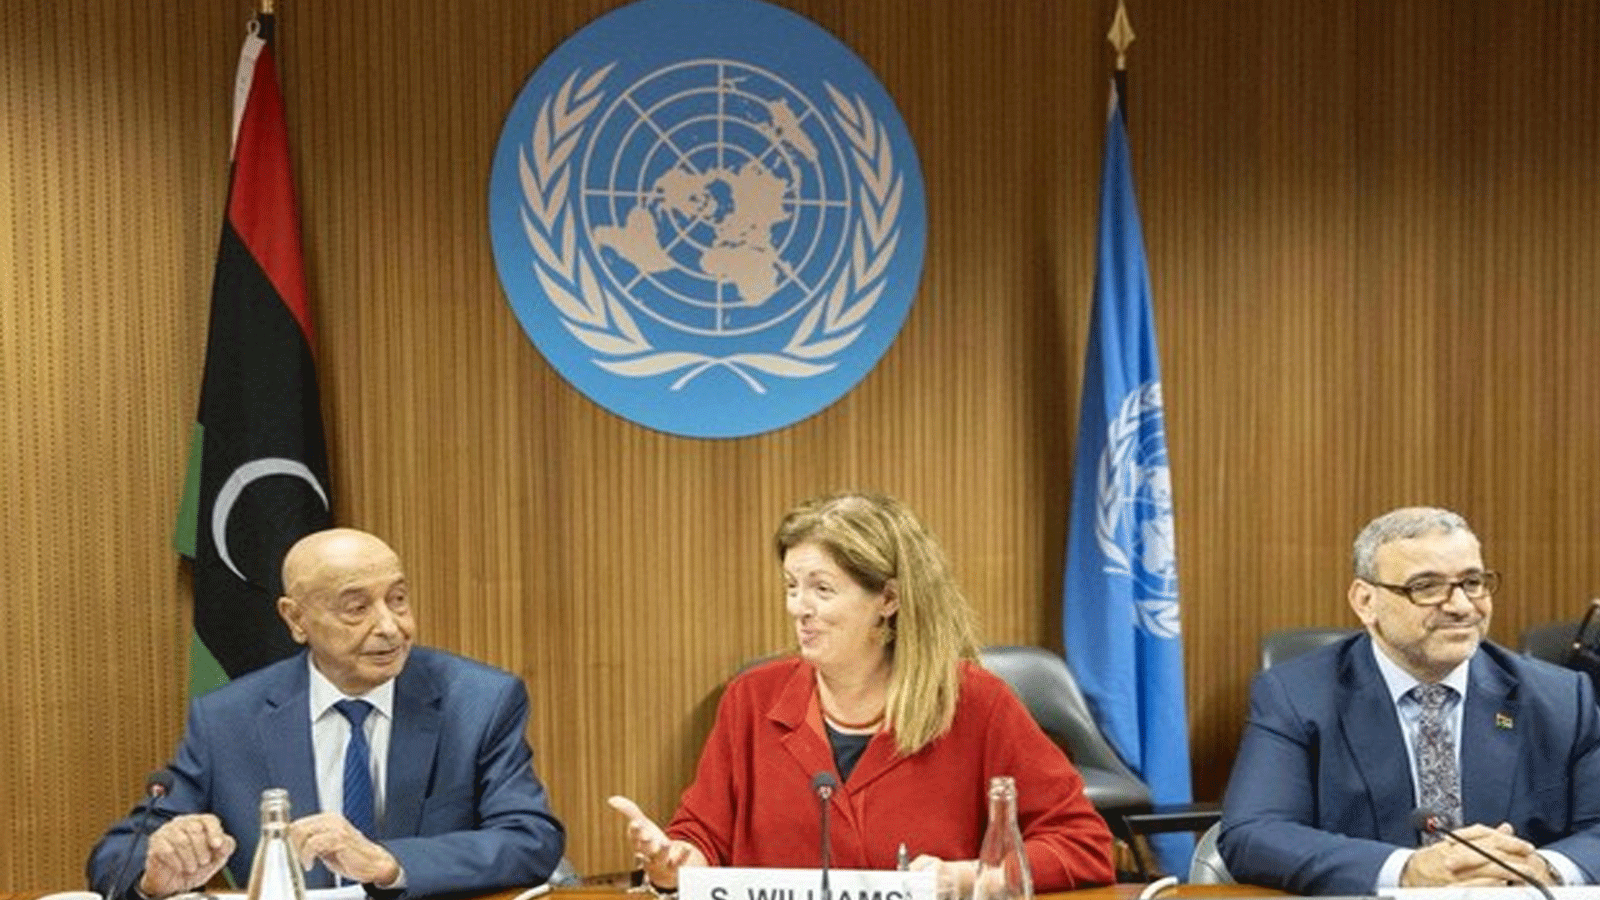 من اليسار: عقيلة صالح، رئيس برلمان شرق ليبيا، ستيفاني ويليامز، المستشارة الخاصة للأمم المتحدة بشأن ليبيا وخالد المشري، رئيس المجلس الأعلى للدولة ومقره الغرب، في مقر الأمم المتحدة بجنيف